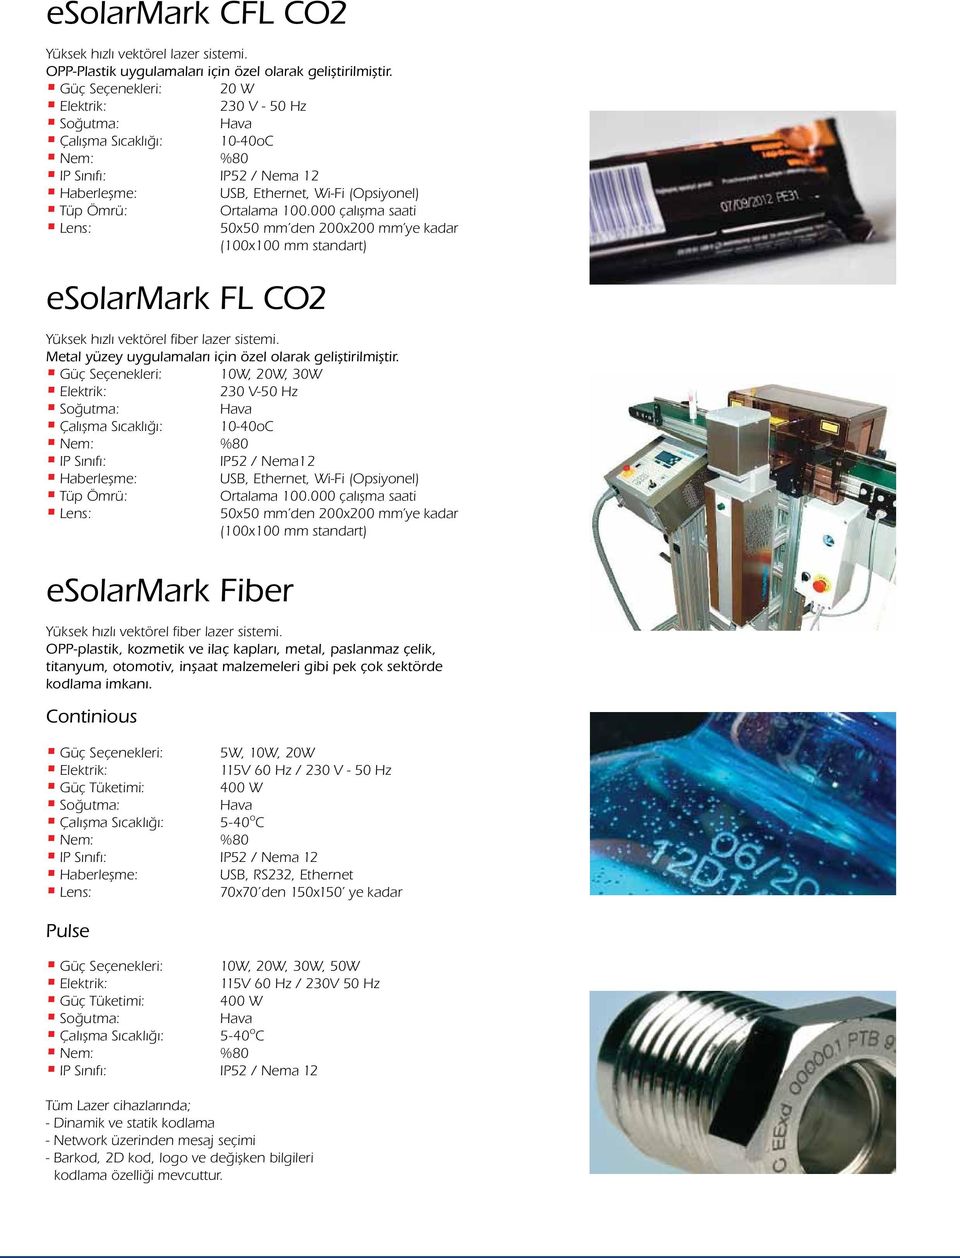 000 çalışma saati Lens: 50x50 mm den 200x200 mm ye kadar (100x100 mm standart) esolarmark FL CO2 Yüksek hızlı vektörel fiber lazer sistemi. Metal yüzey uygulamaları için özel olarak geliştirilmiştir.